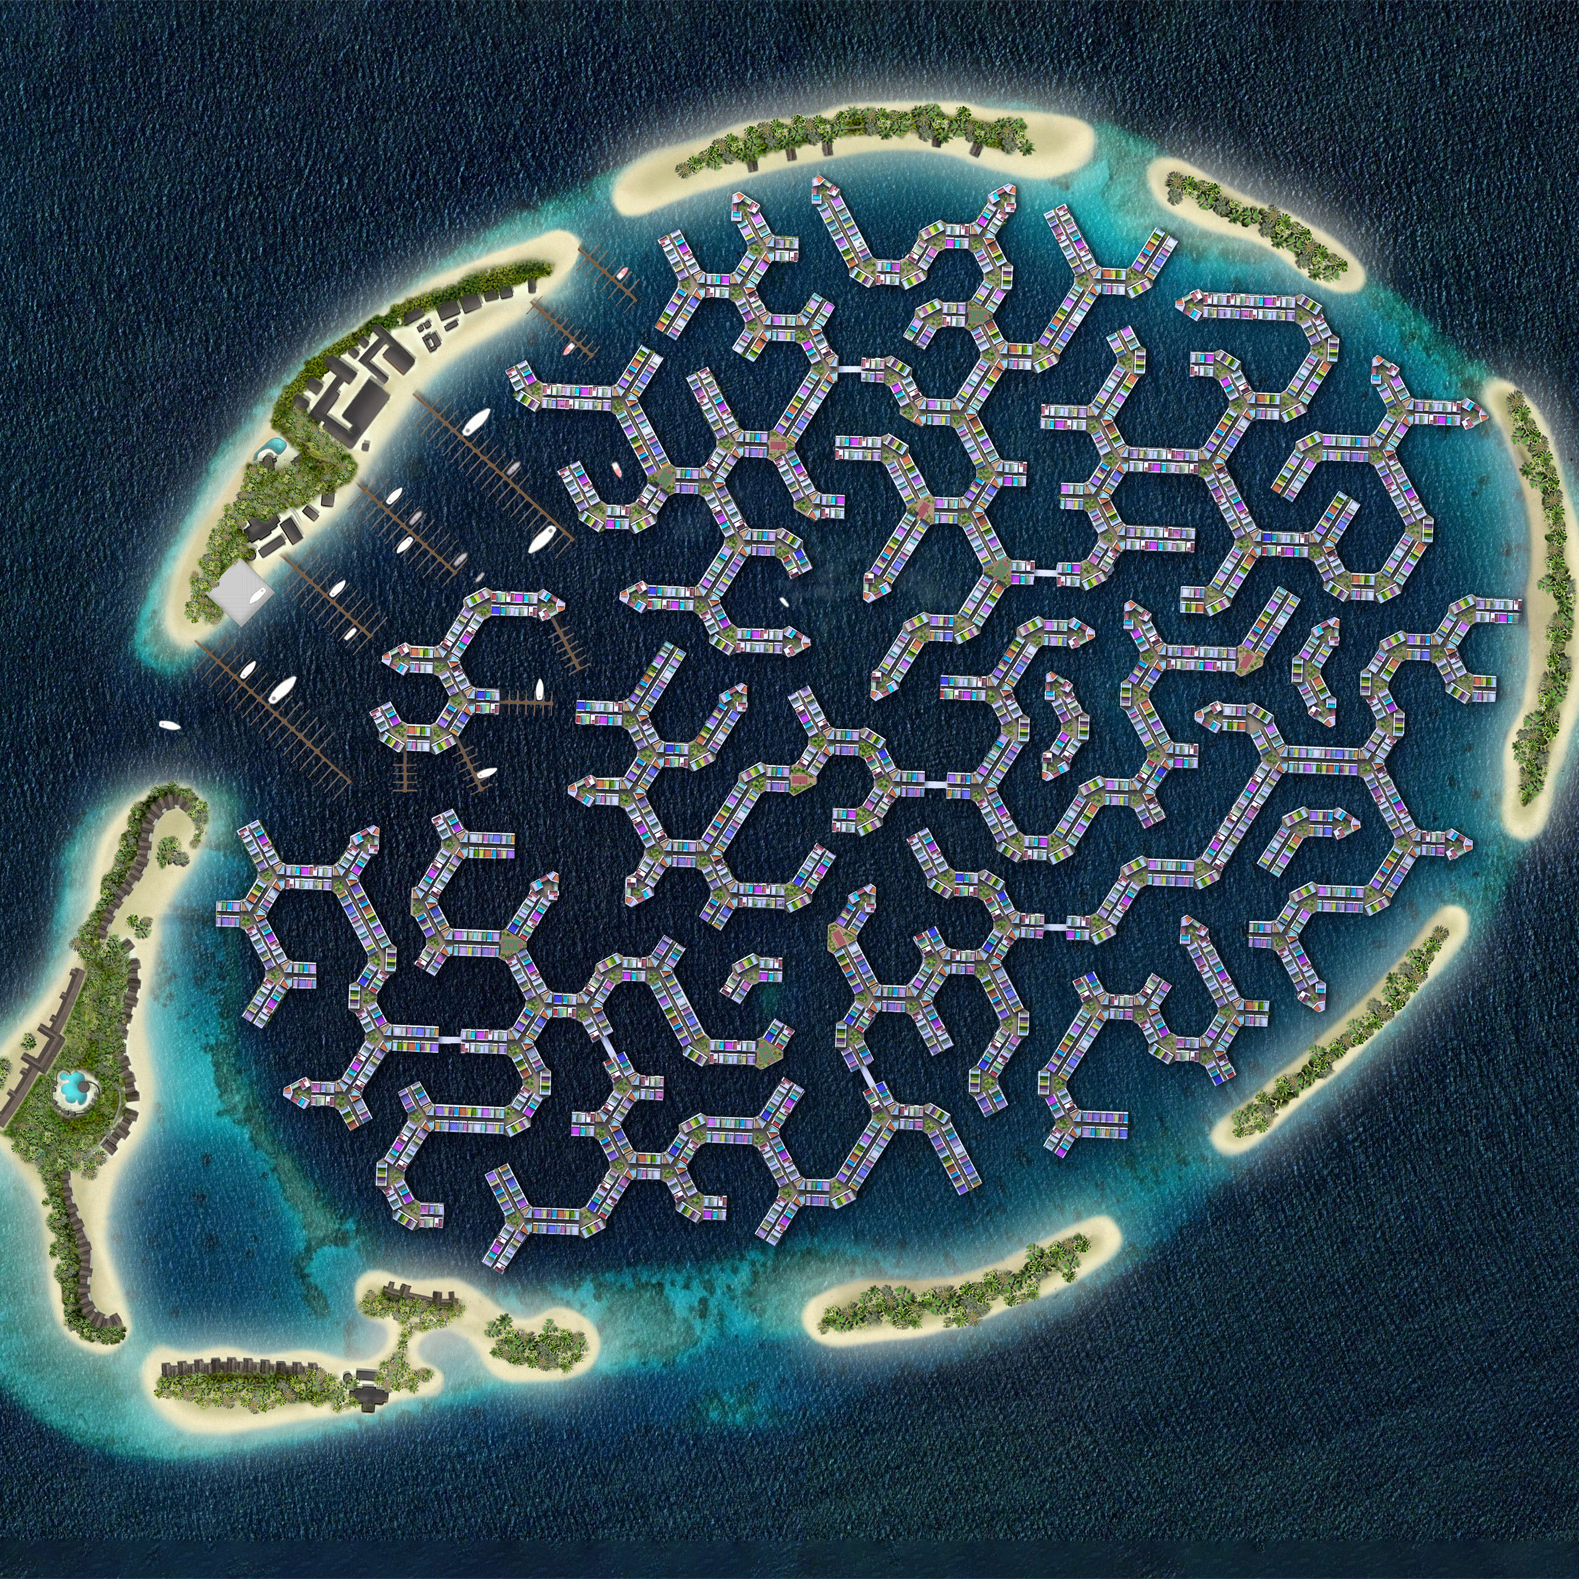 Ring shaped island nyt